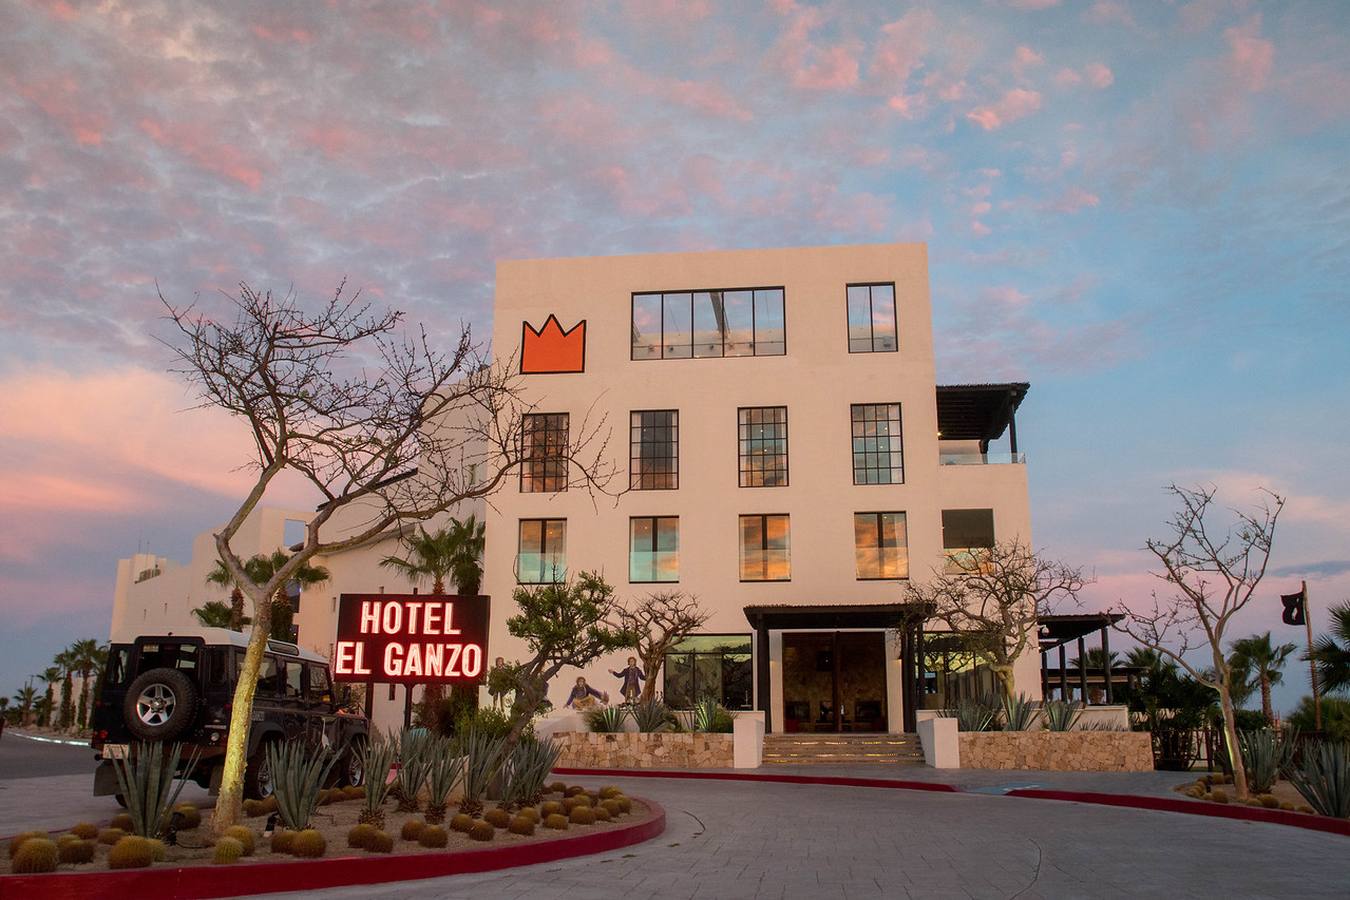 Hotel El Ganzo Los Cabos, Baja California Sur - Mexico